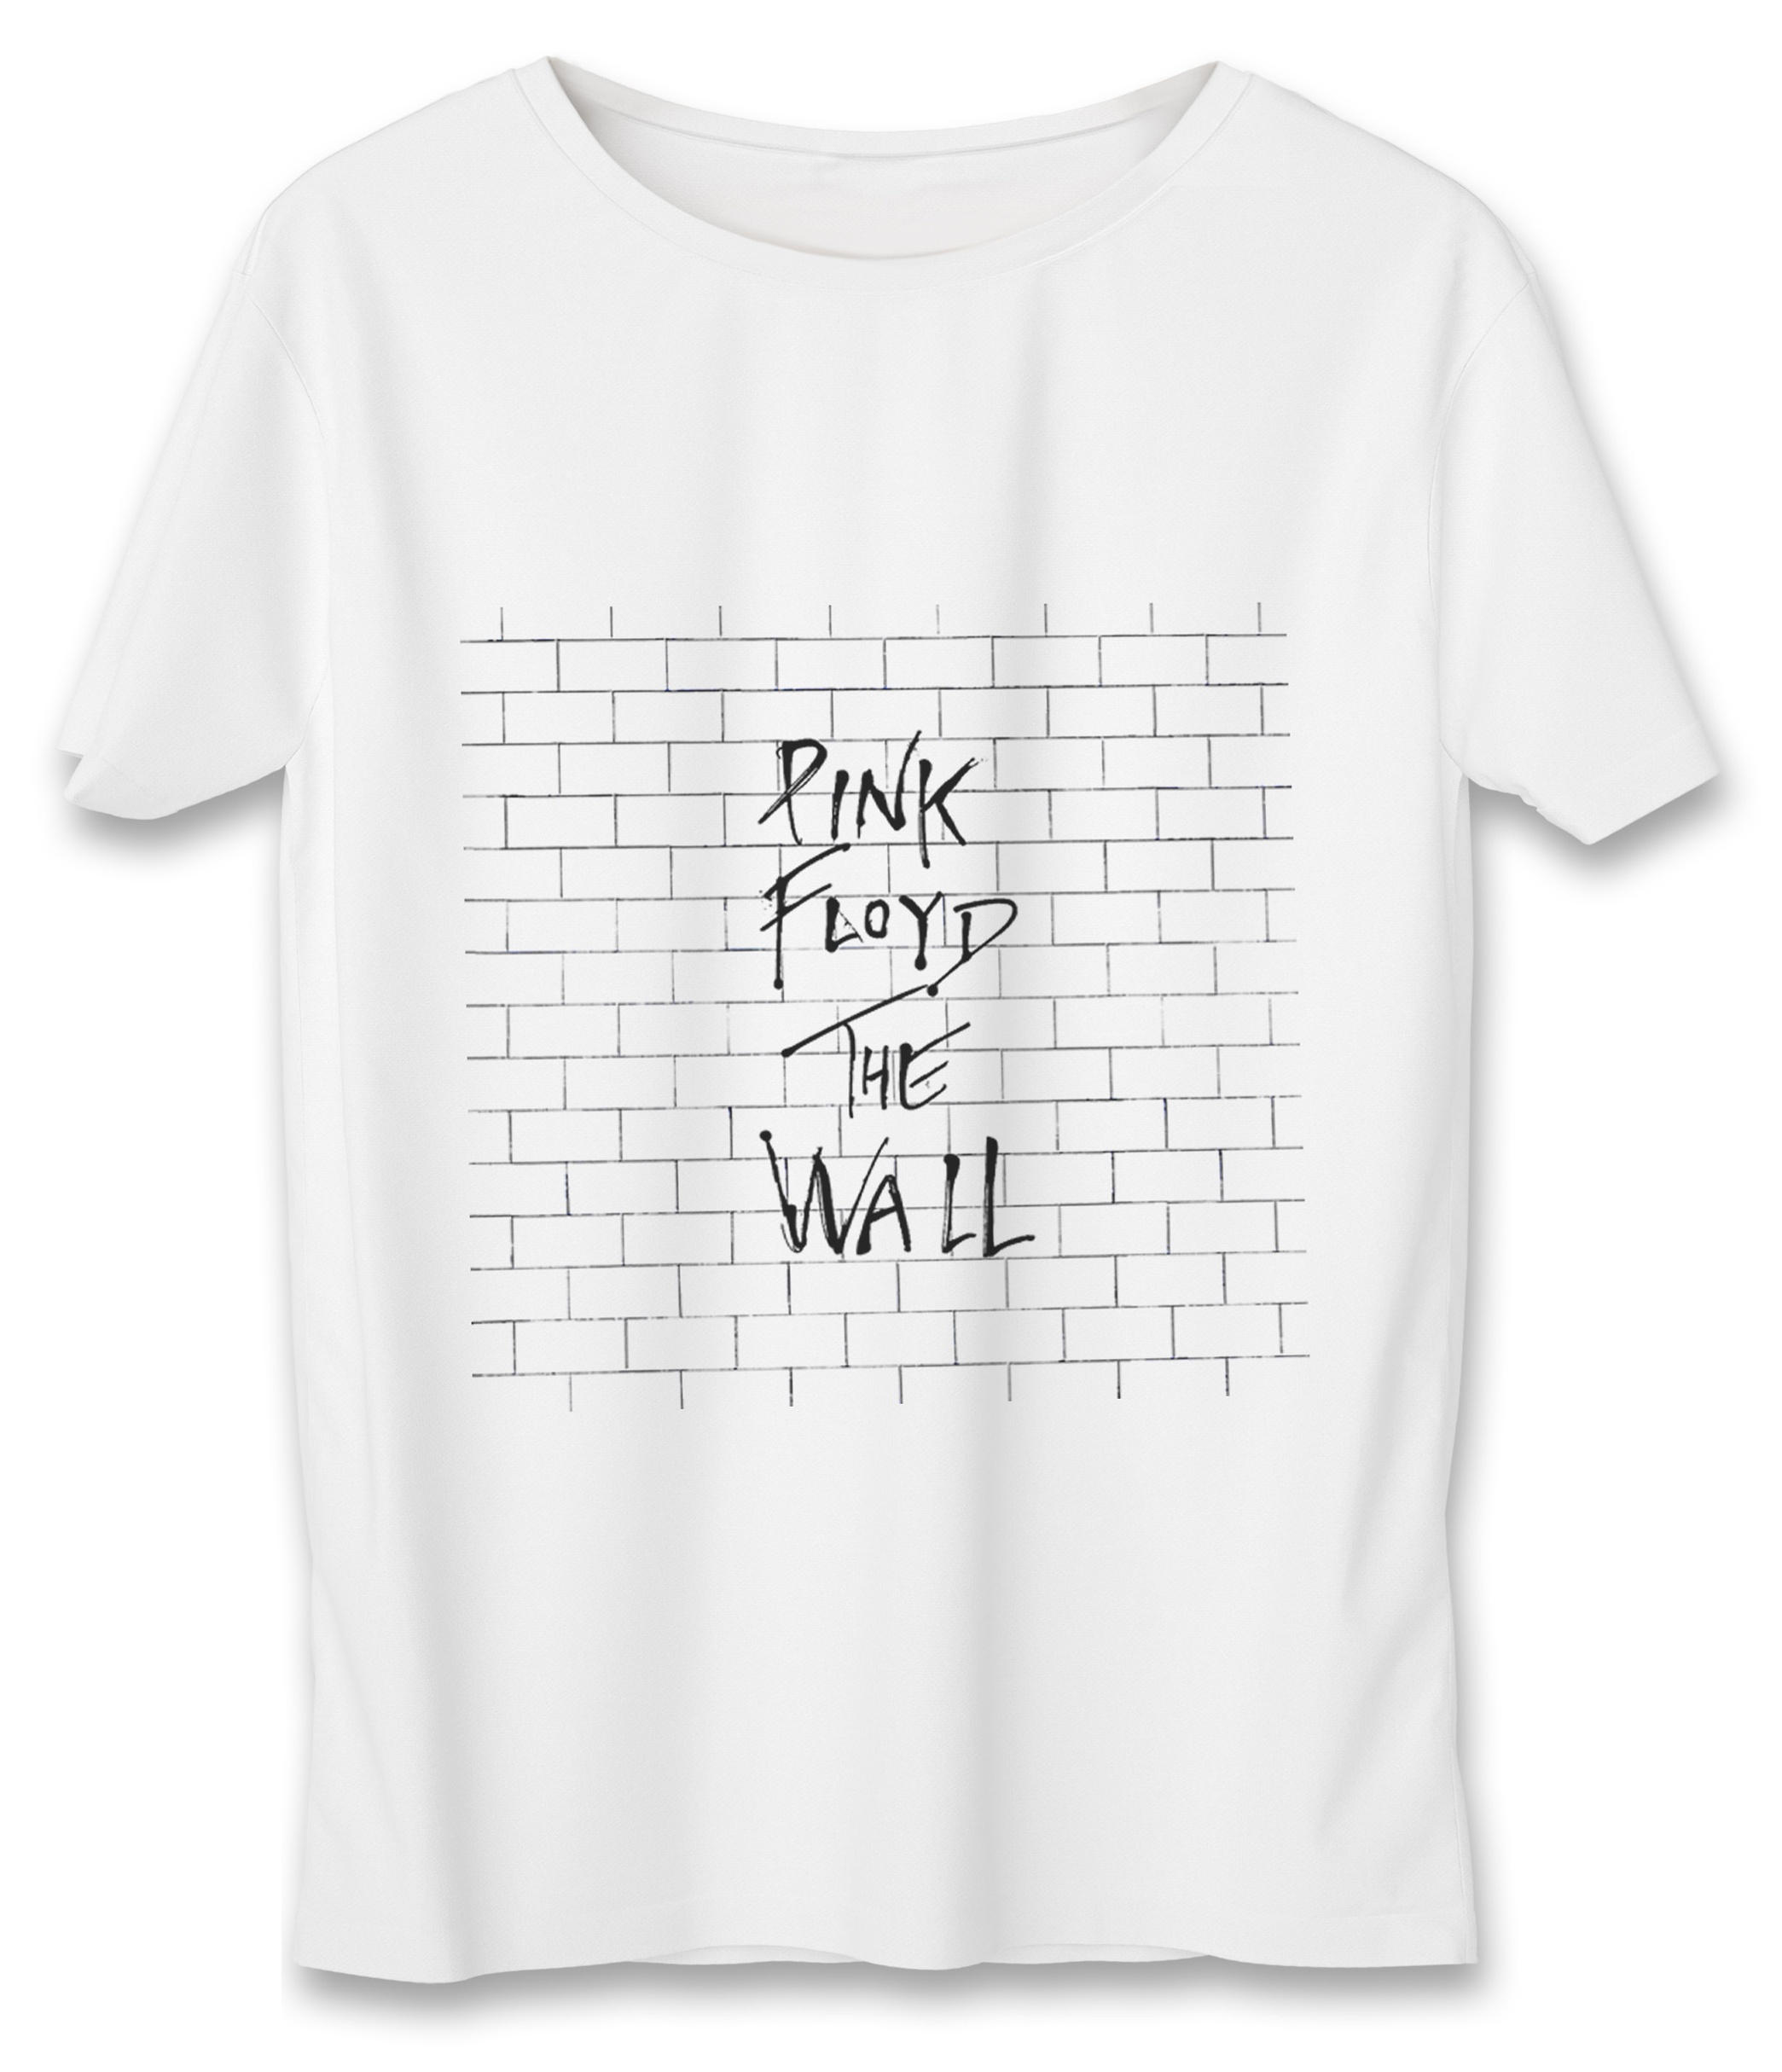 نقد و بررسی تی شرت مردانه به رسم طرح دیوار کد 379 توسط خریداران